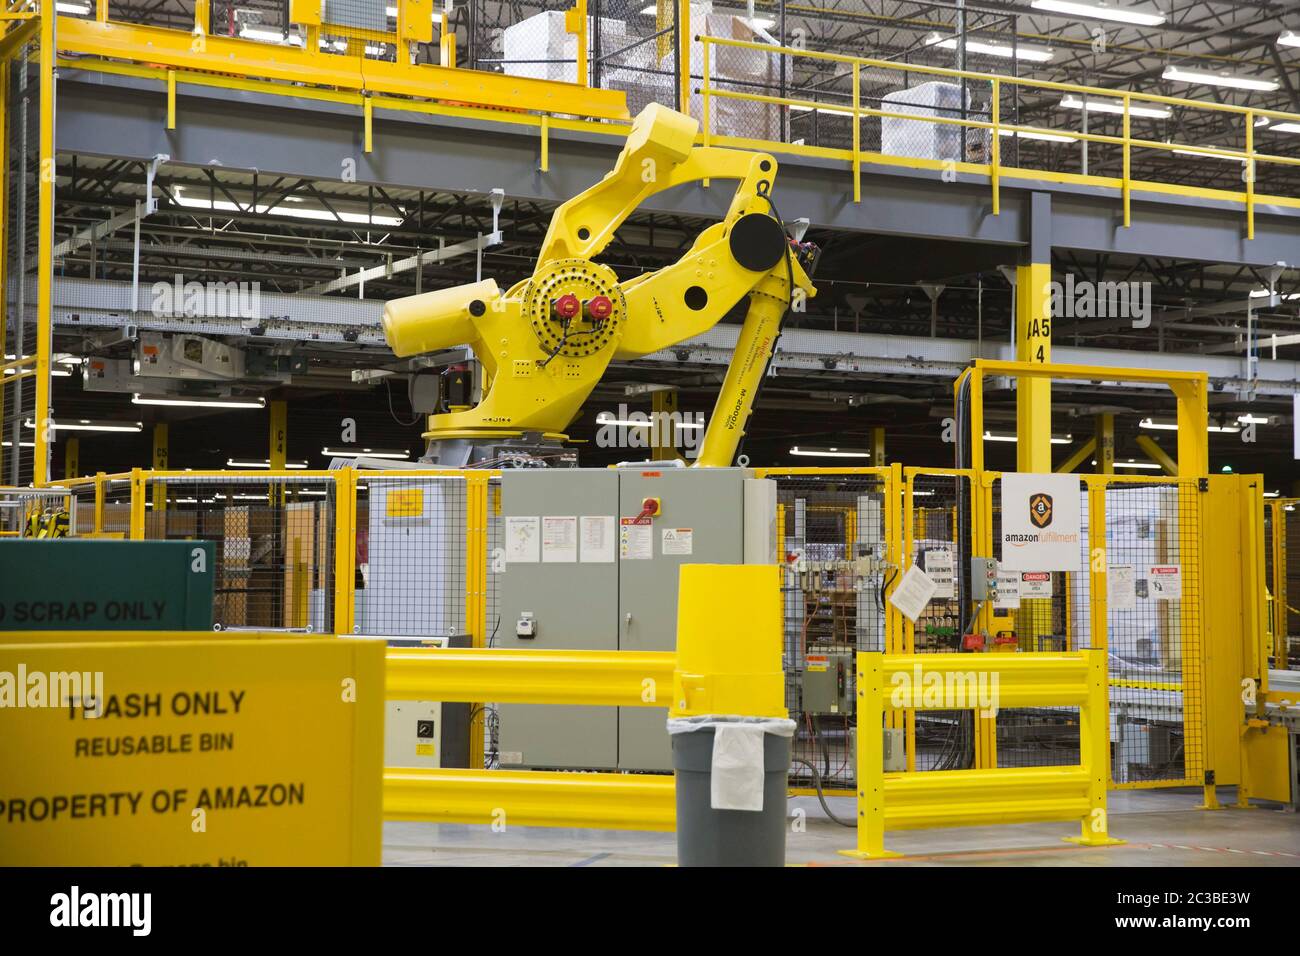 Amazon Fulfillment Center - Robo-Stow, der 6-Tonnen-Roboterarm im 1.25  Millionen Quadratmeter großen Amazon Versandzentrum